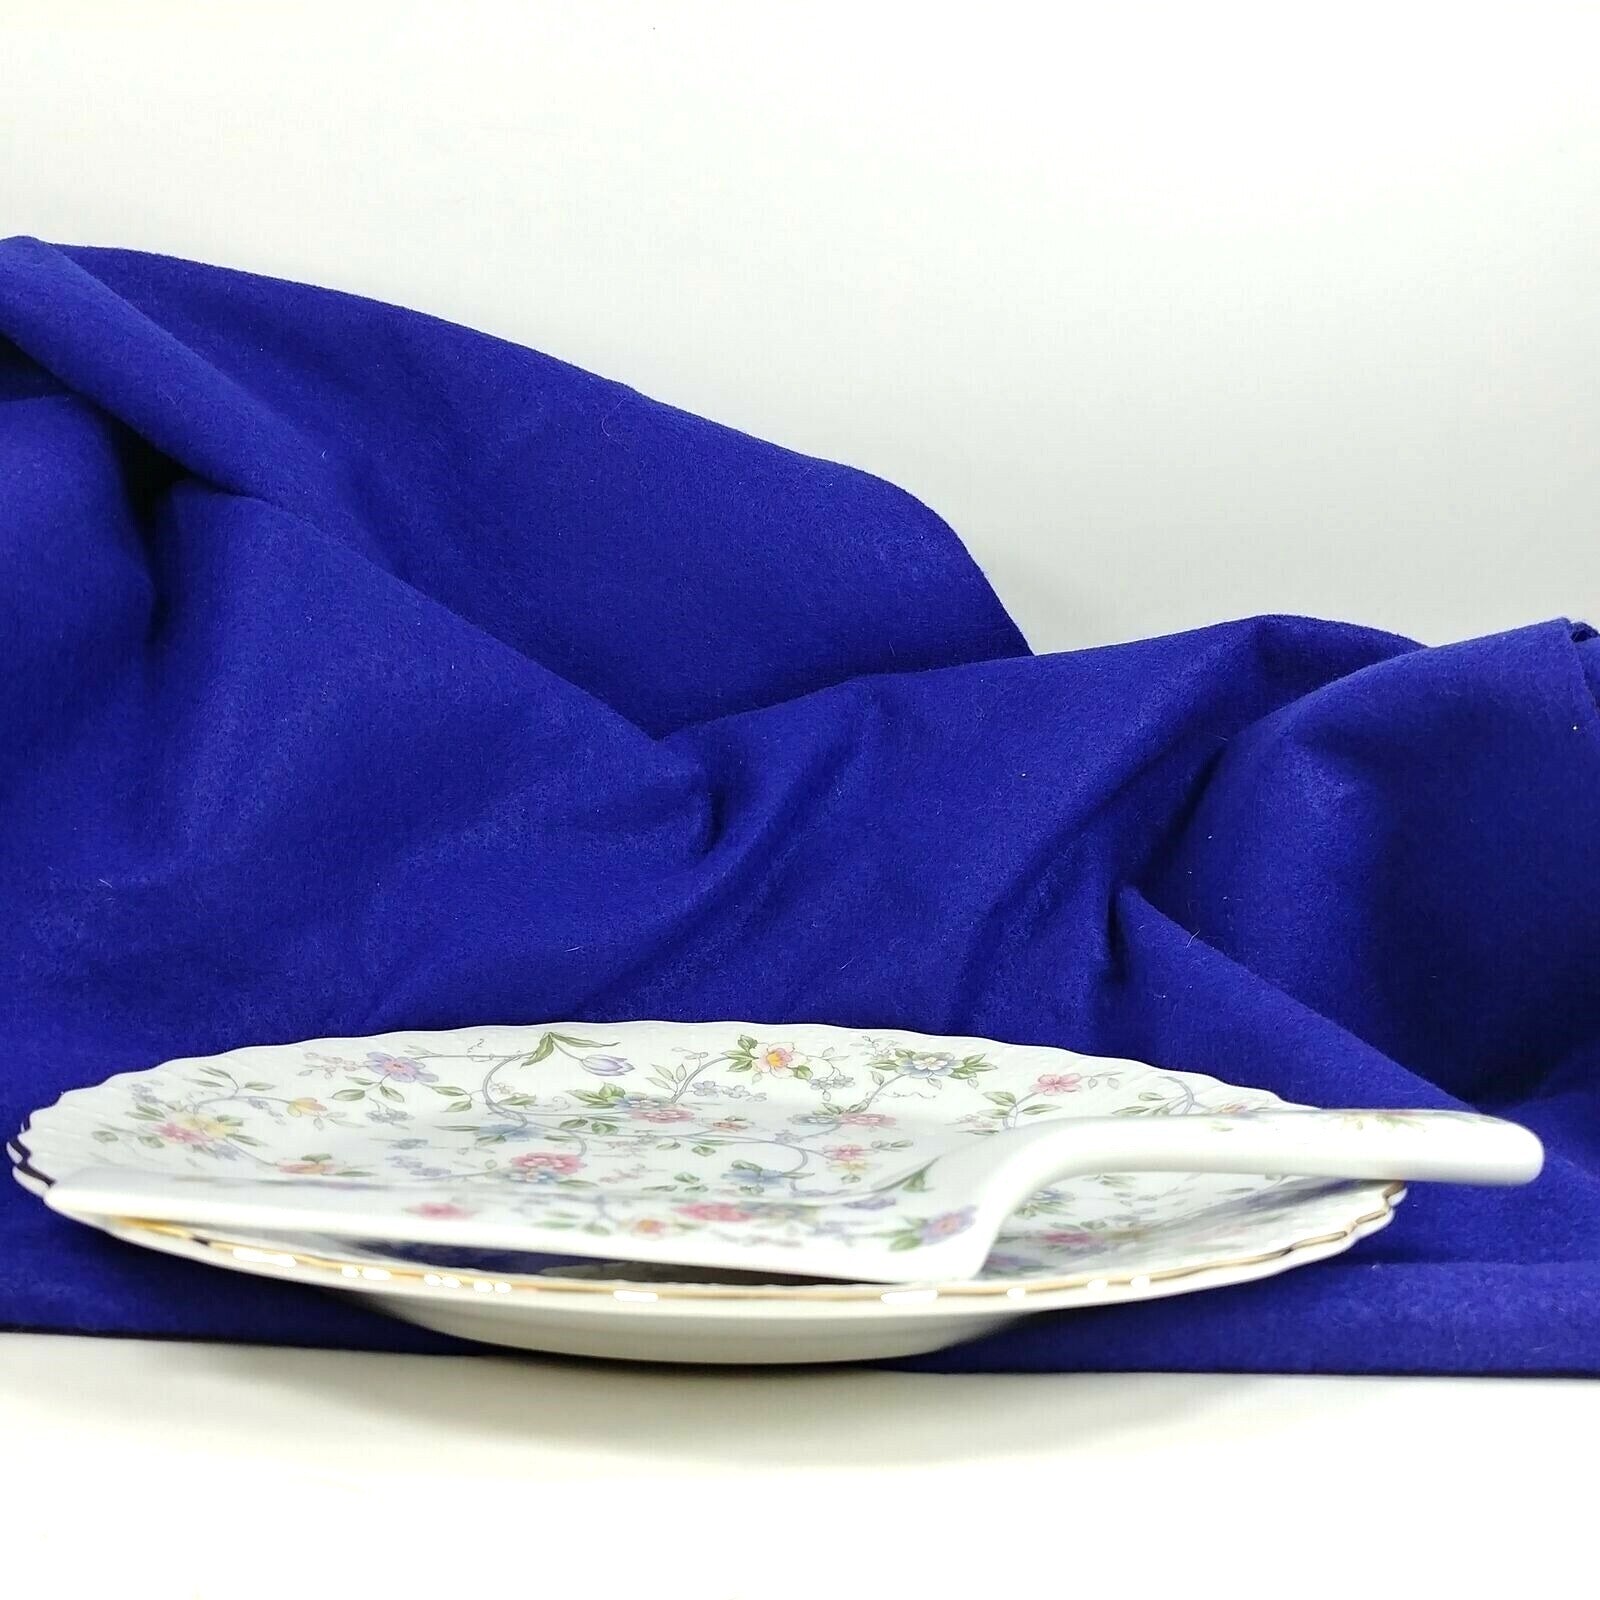 Cake Plate and Slicer Knife Andrea by Sadek Serving set Corona Porcelain Japan